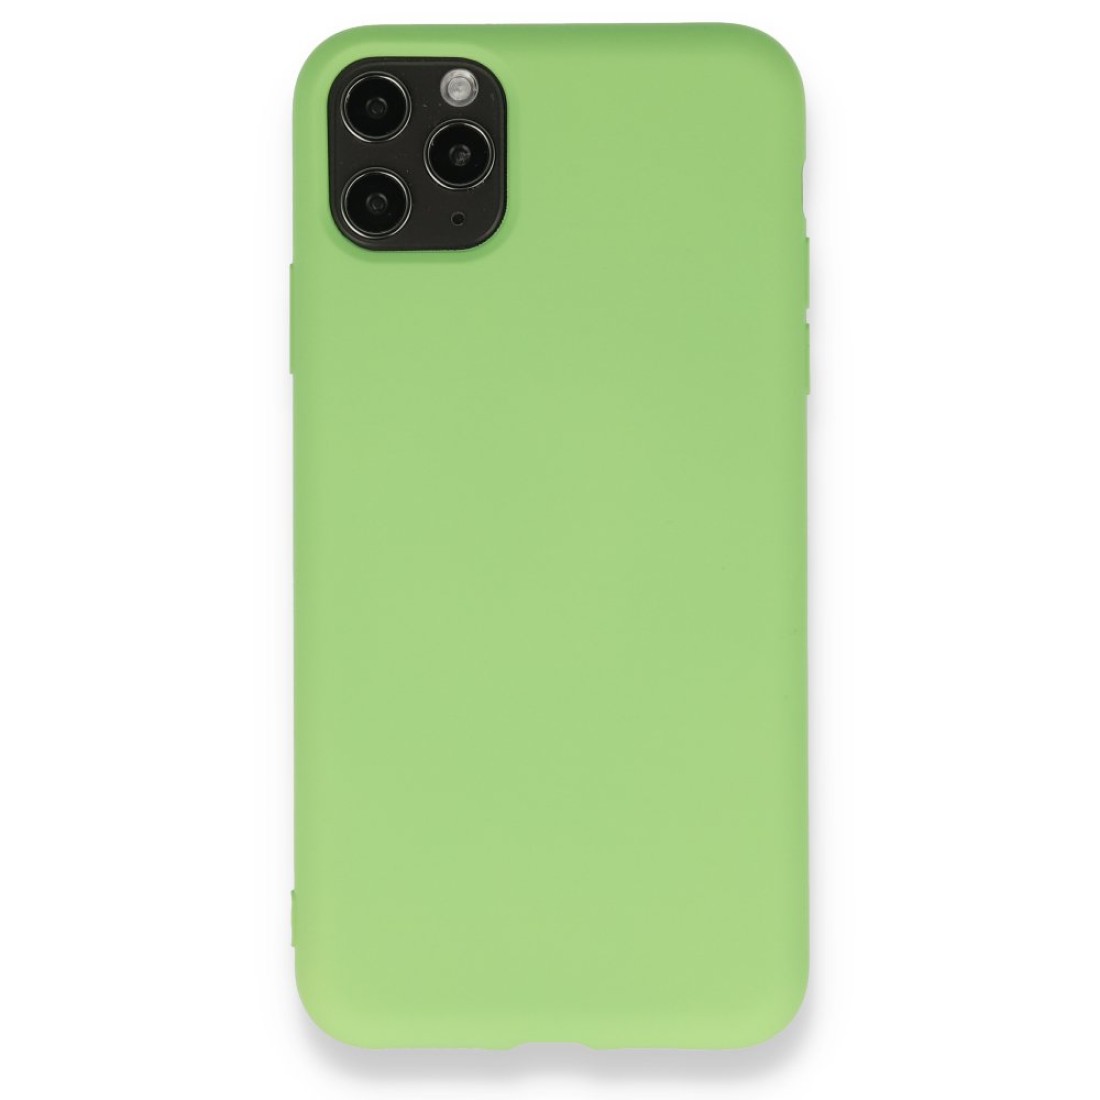 Apple iPhone 11 Pro Max Kılıf Nano içi Kadife  Silikon - Yeşil